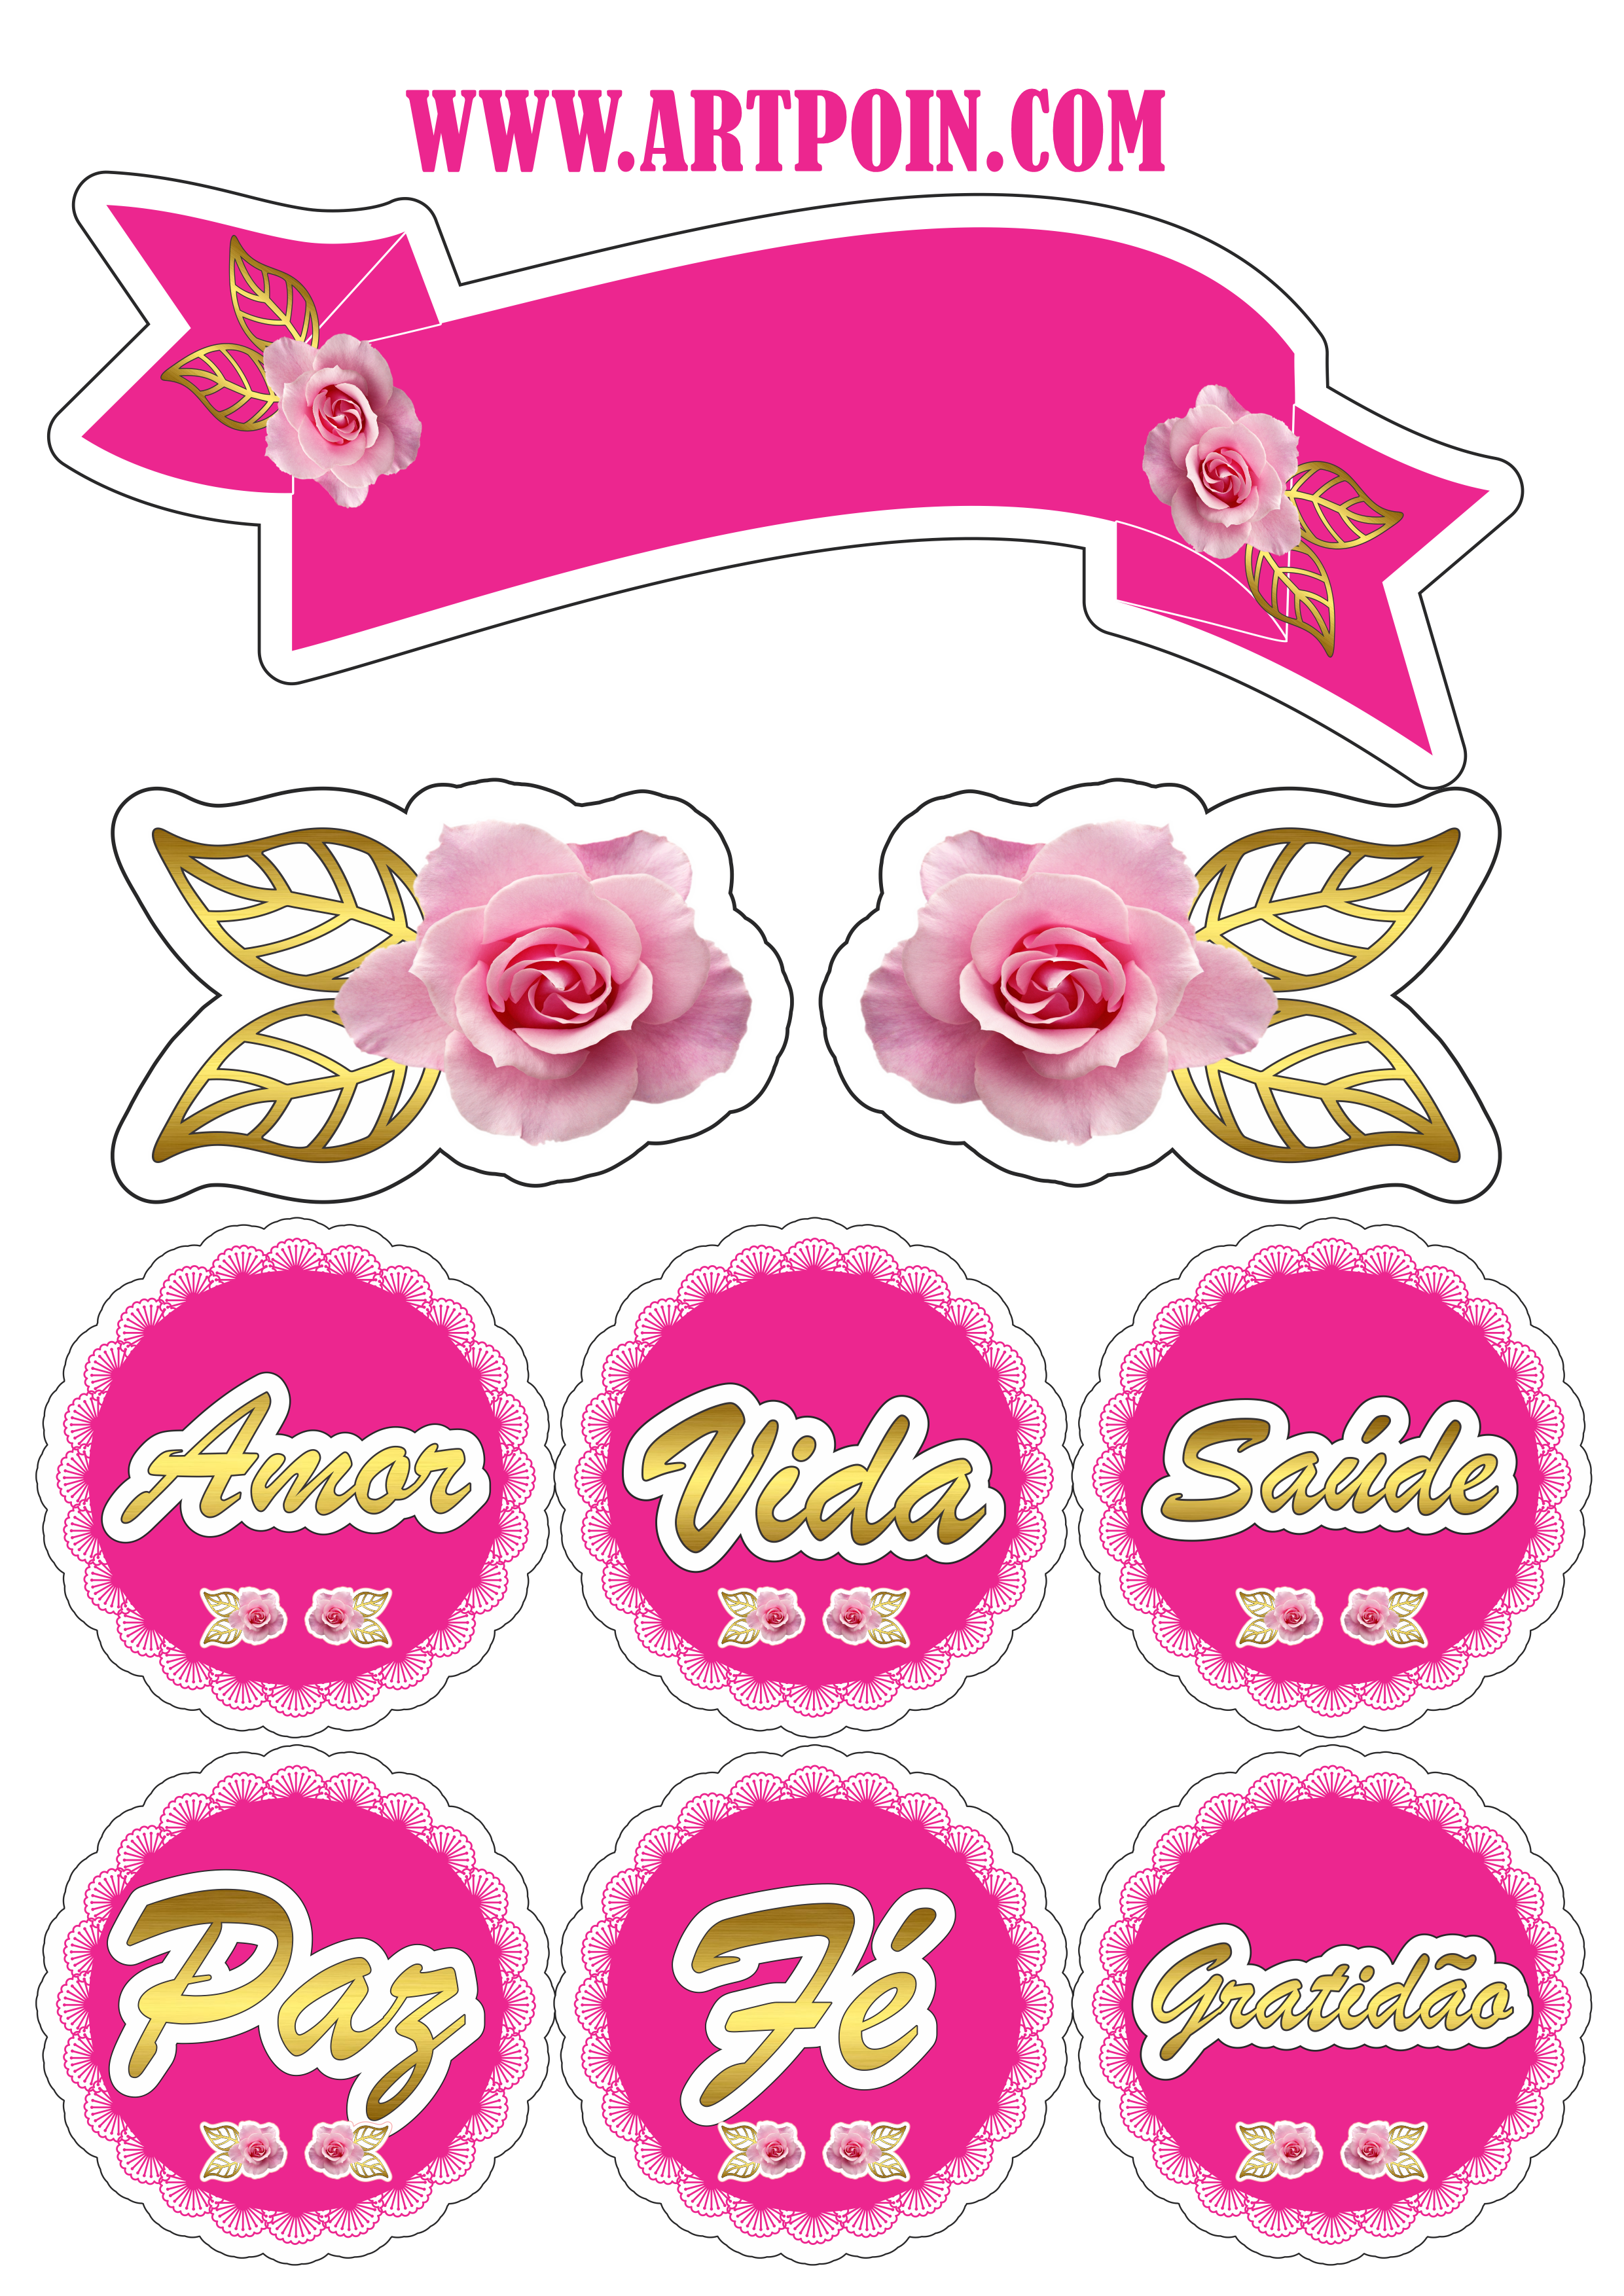 Topo de bolo rosas e borboletas lindo para decoração png